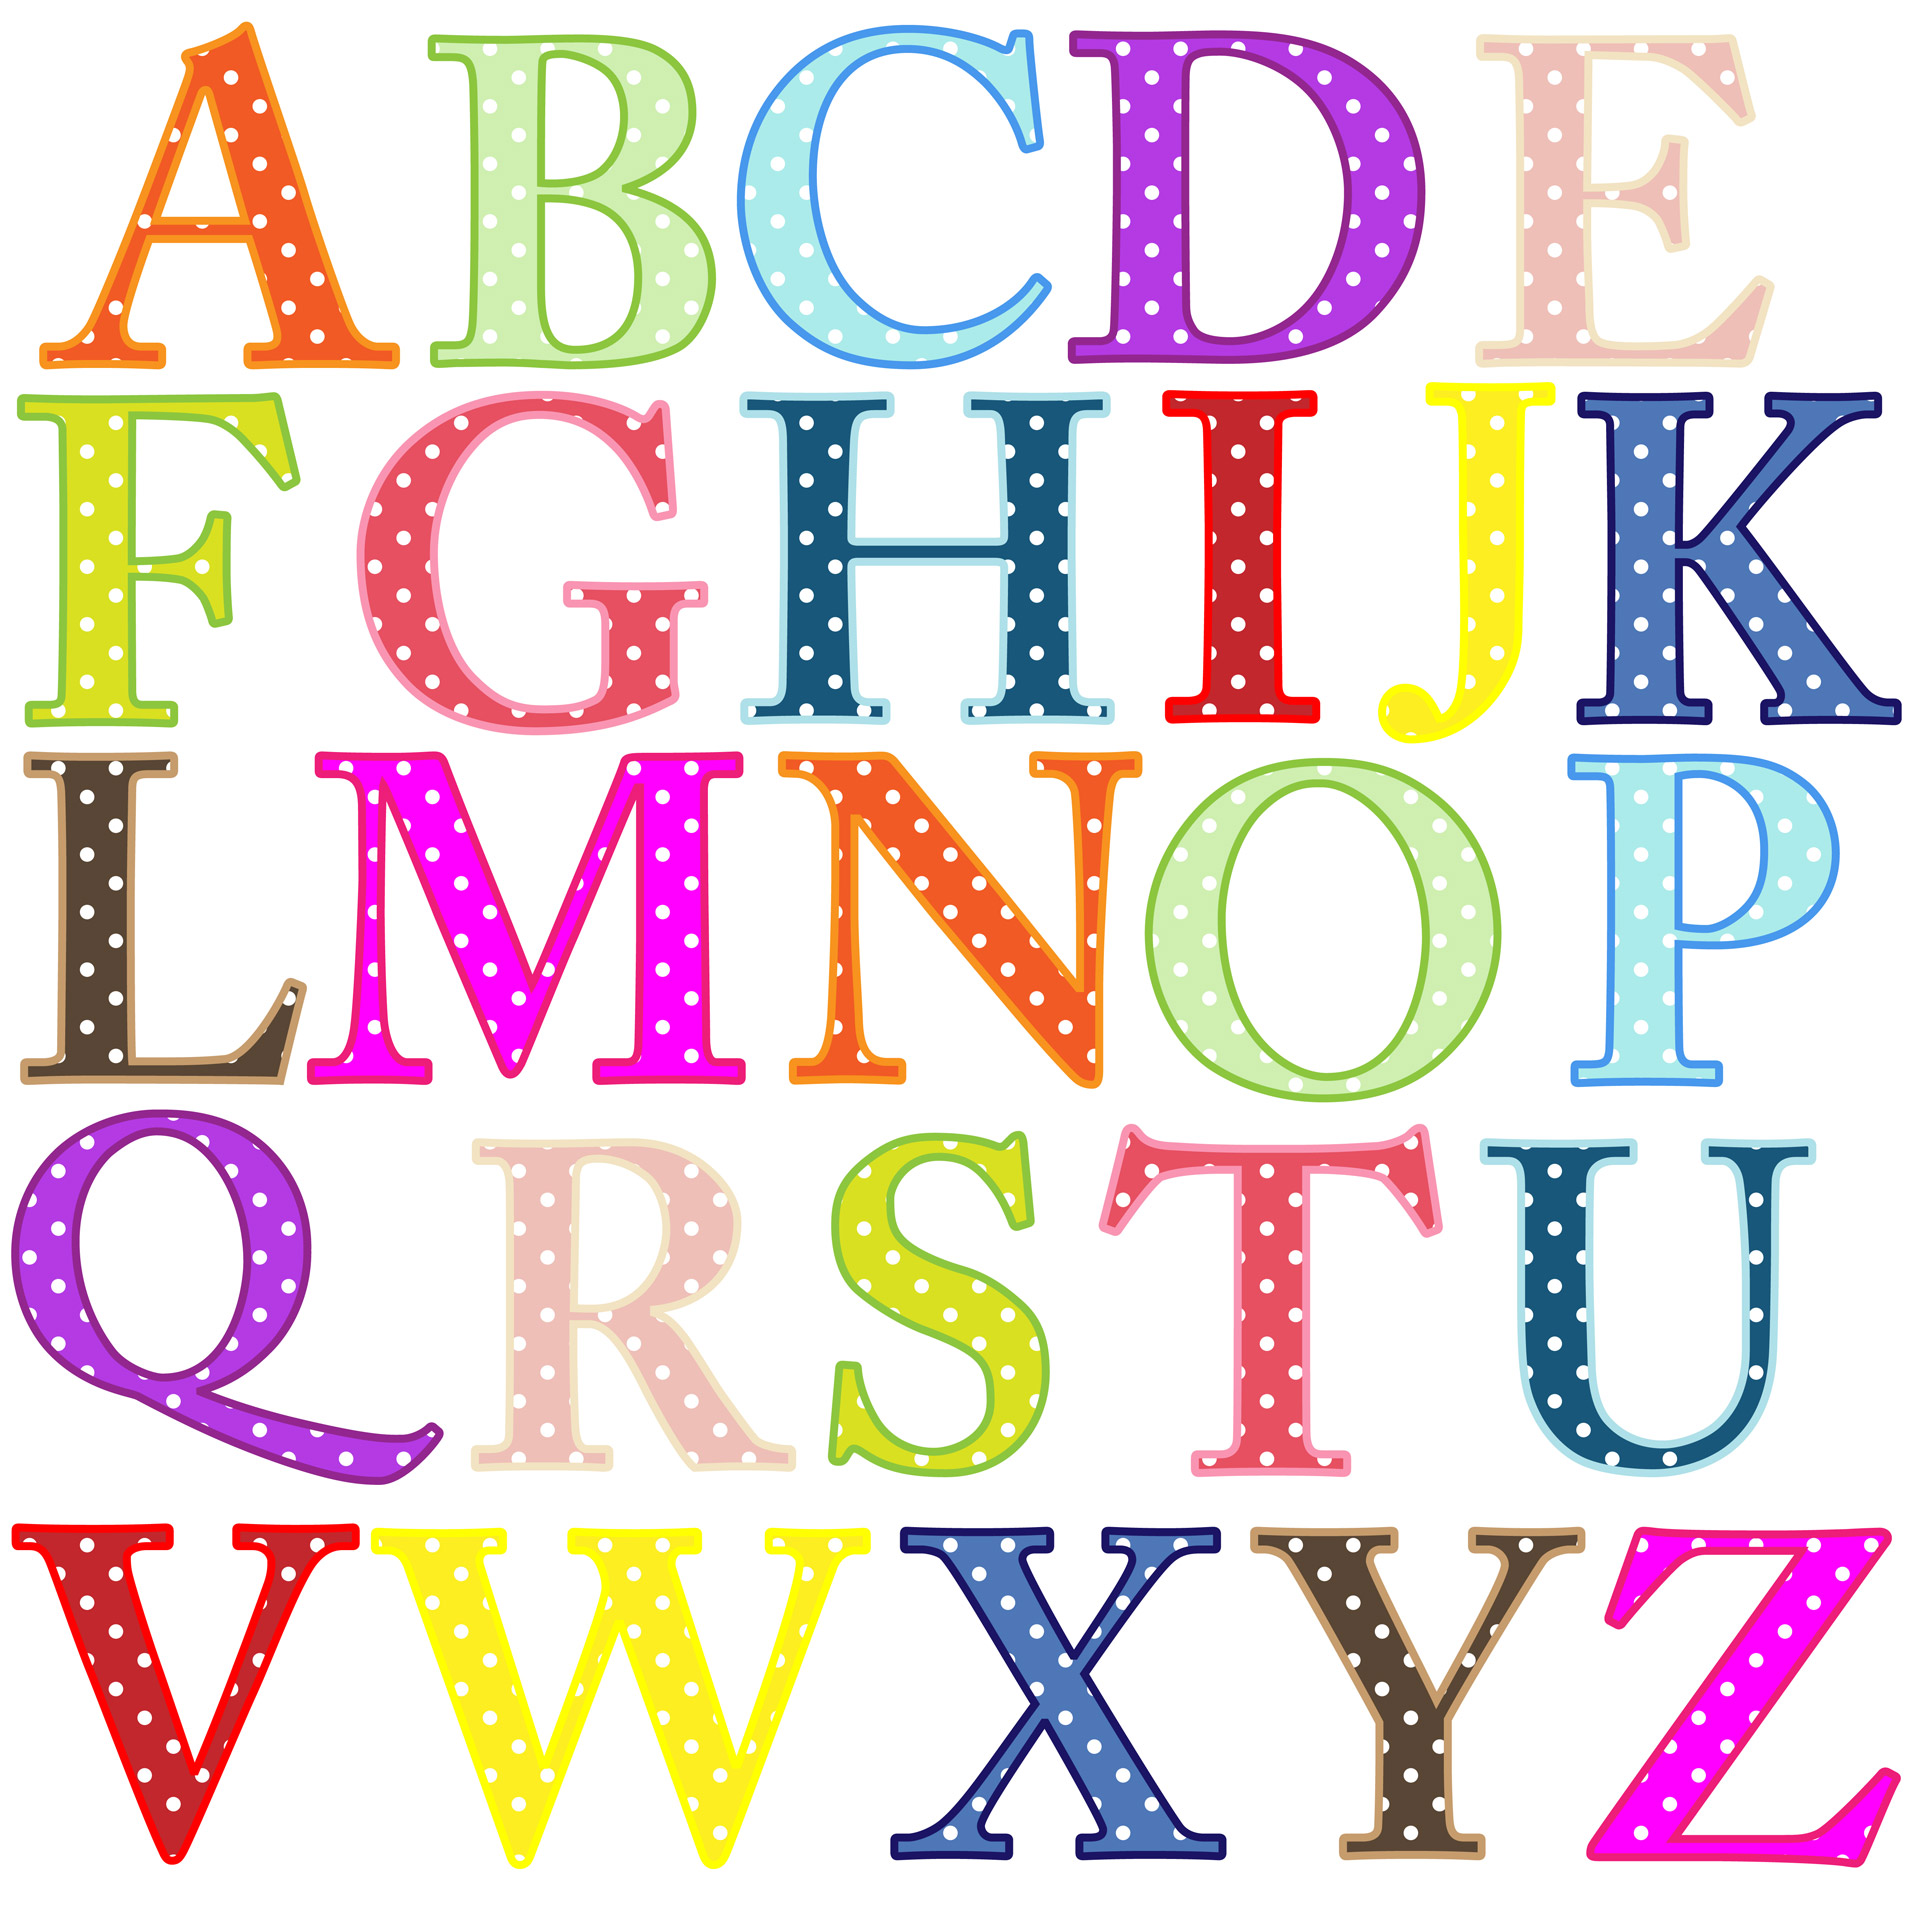 Alphabet Letters Clipart Free Stock Photo Public Domain Pictures